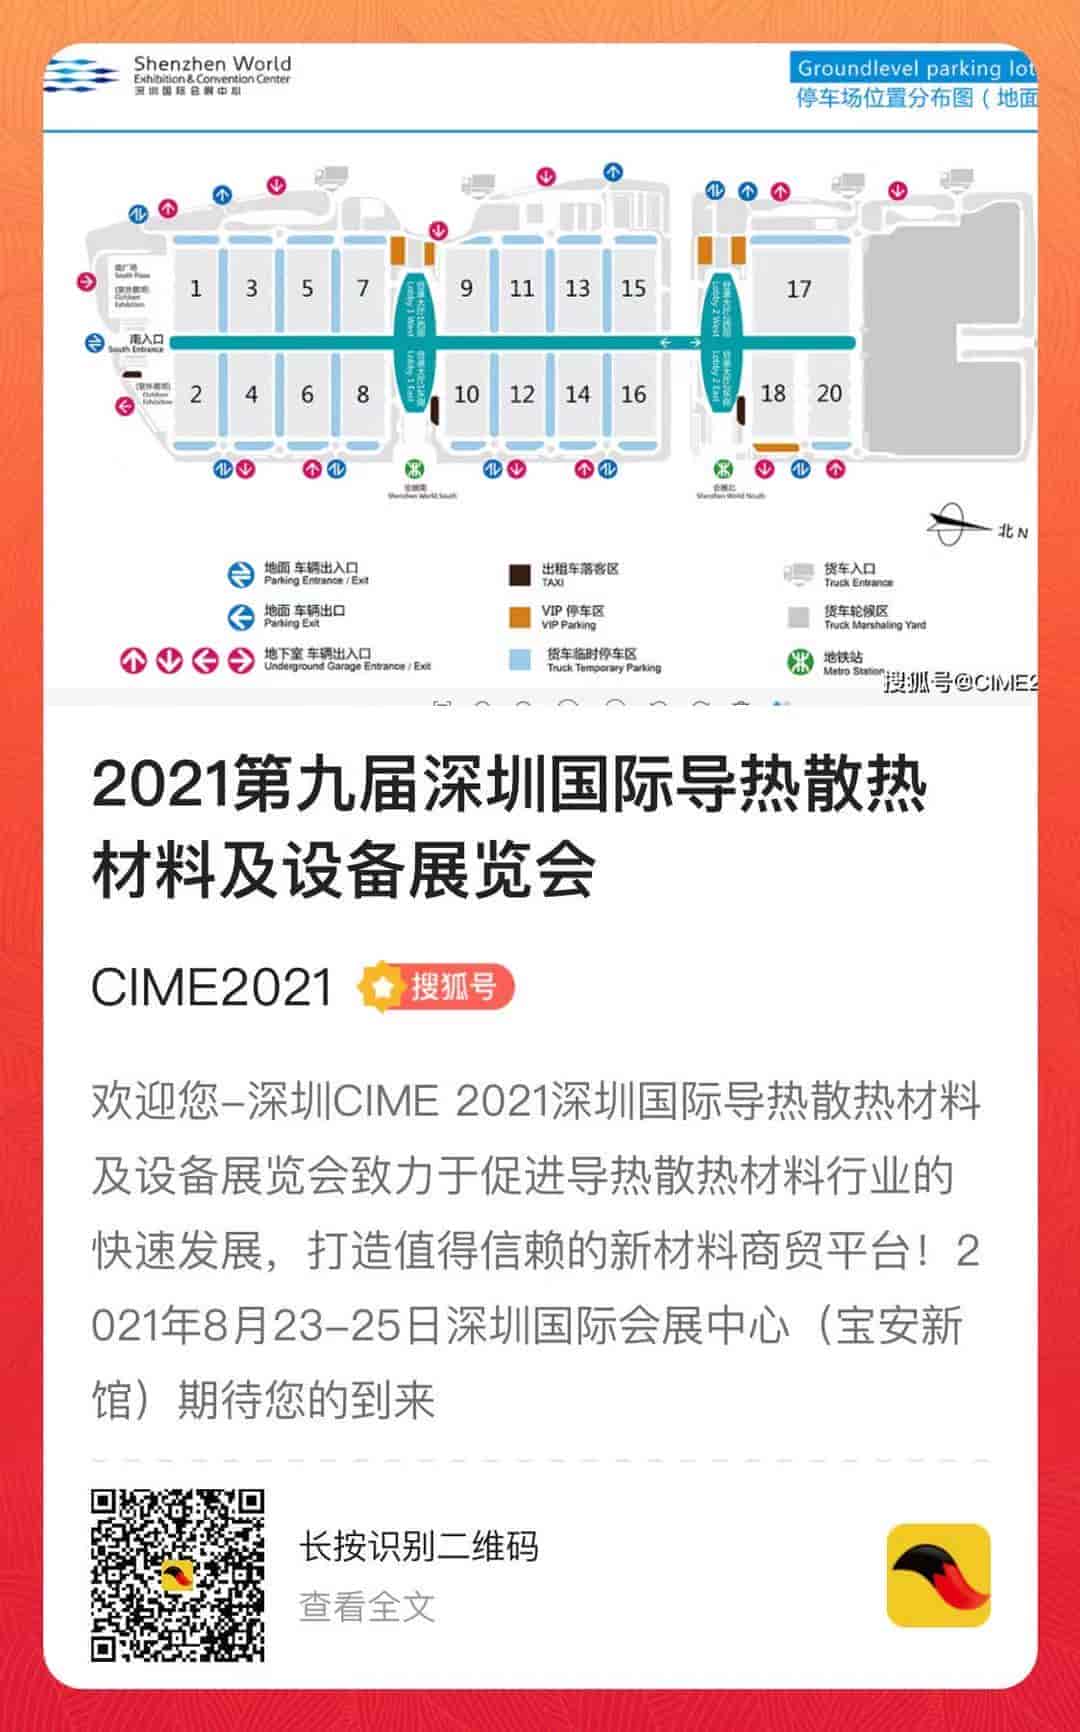 CIME 2021深圳导热散热展